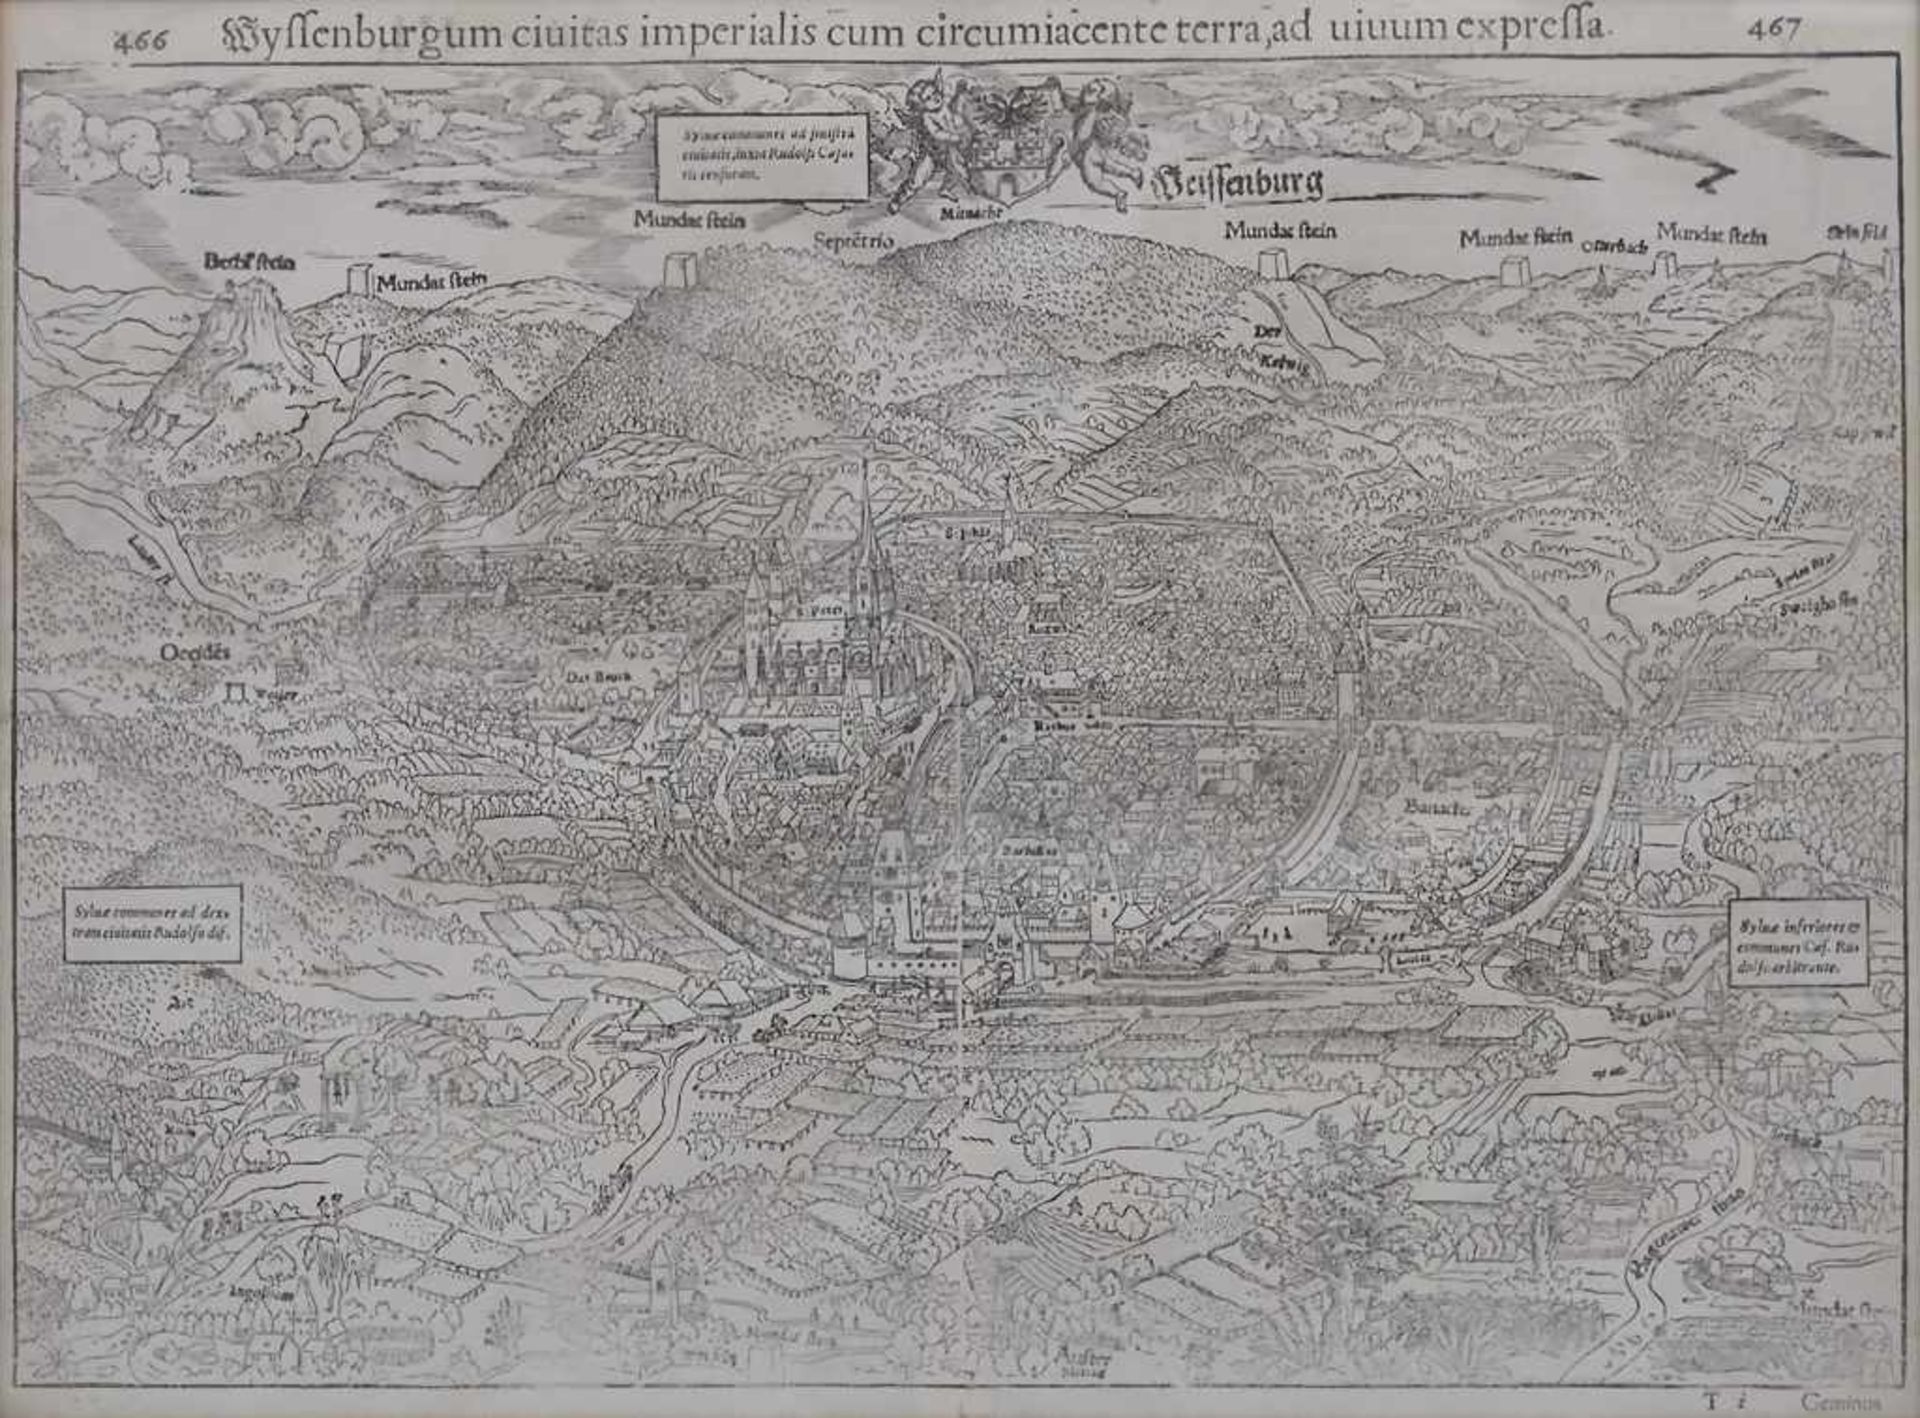 Sebastian Münster (1489-1552, Historische Ansicht von Weissenburg / A historic view of